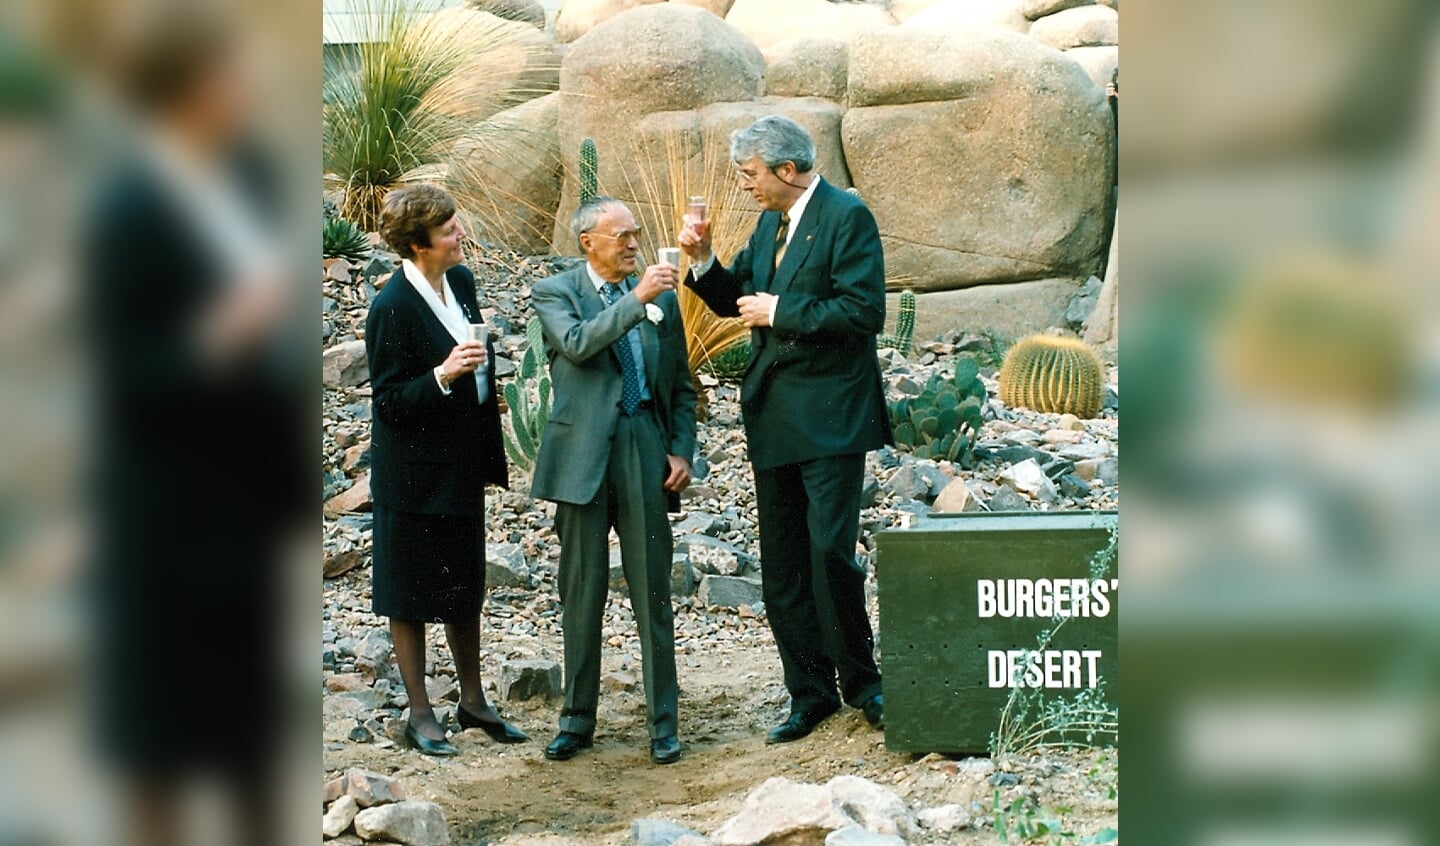 Prins Bernhard heeft de Desert zojuist geopend door een kalkoengier los te laten (1994).